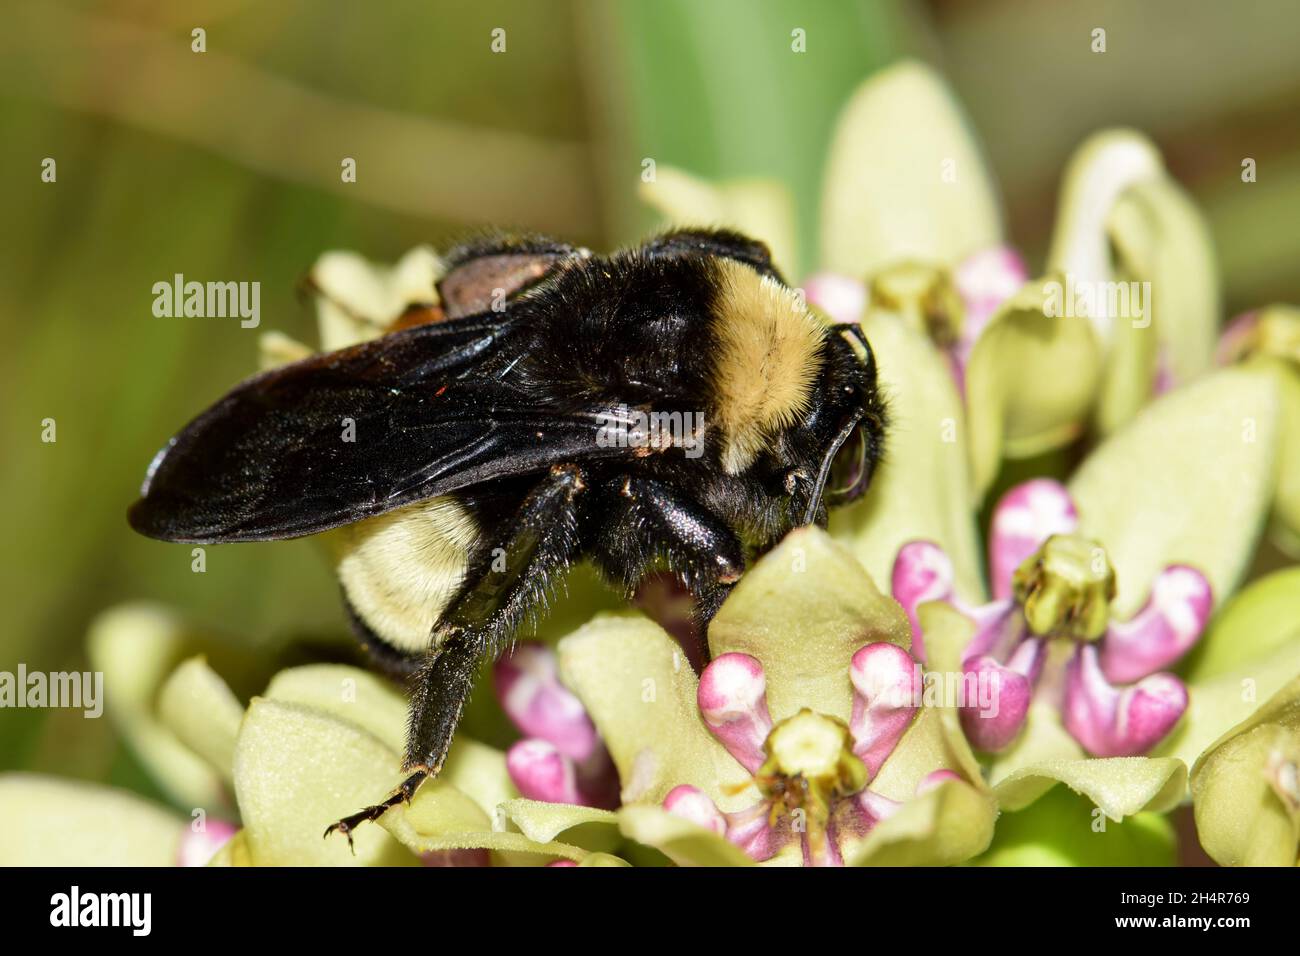 American Bumblebee (Bombus pensylvanicus) bestäubt Asclepias Viridis Milkweed in Houston, TX. Diese Bienen gelten als bedrohte Spezies. Stockfoto